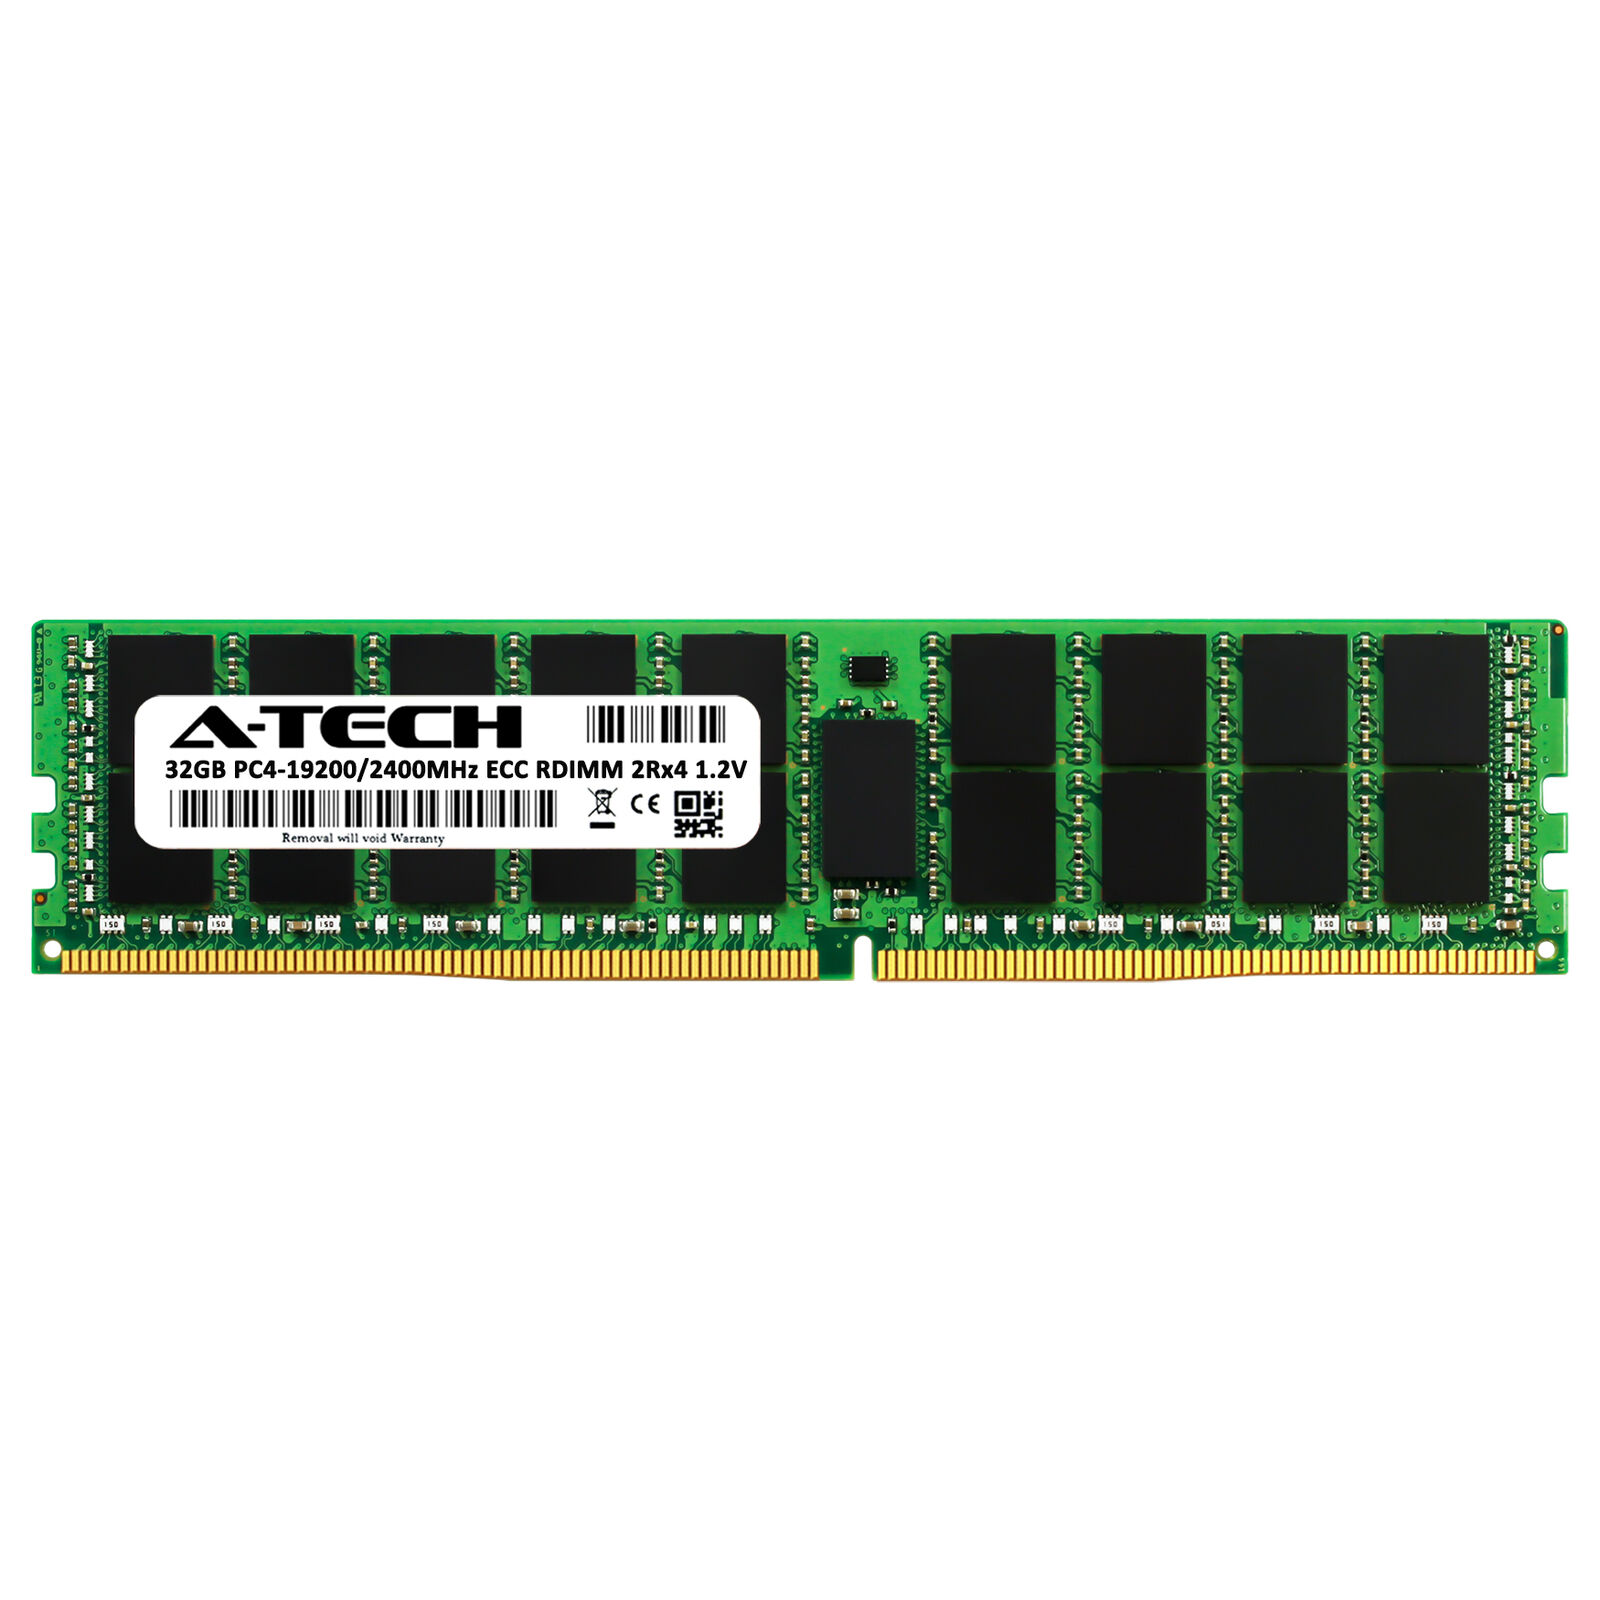 A-Tech 32GB DDR4 2400 PC4-19200 ECC REG DIMM for Dell Precision 5810 Memory RAM